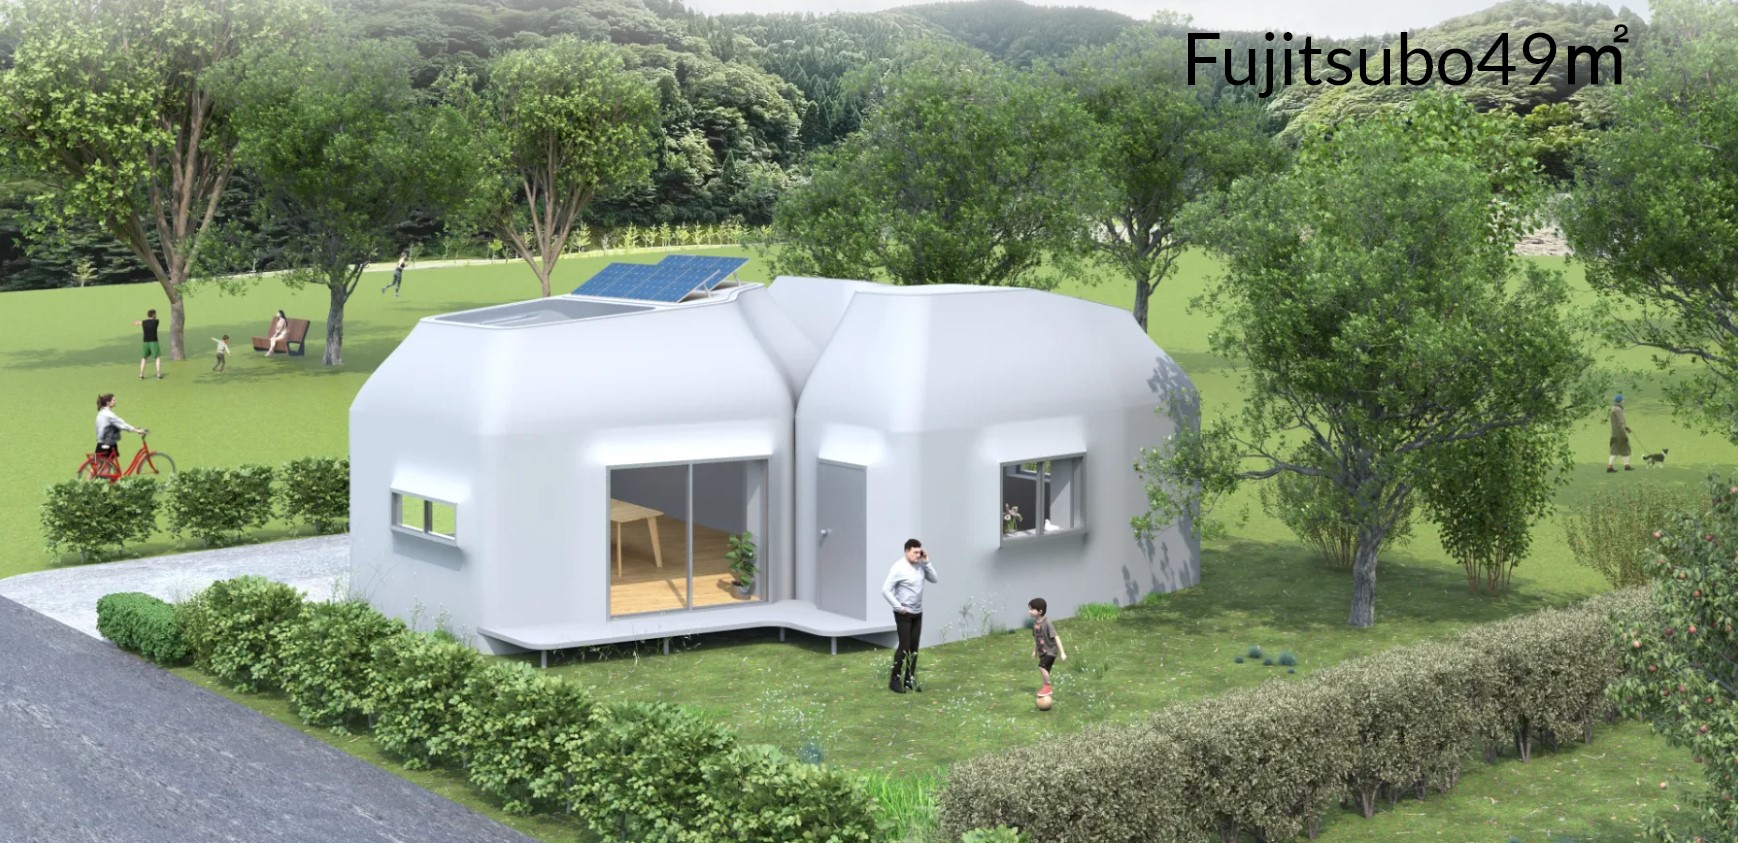 Budynek Fujitsubo wydrukowany w 3D (źródło: Serendix)